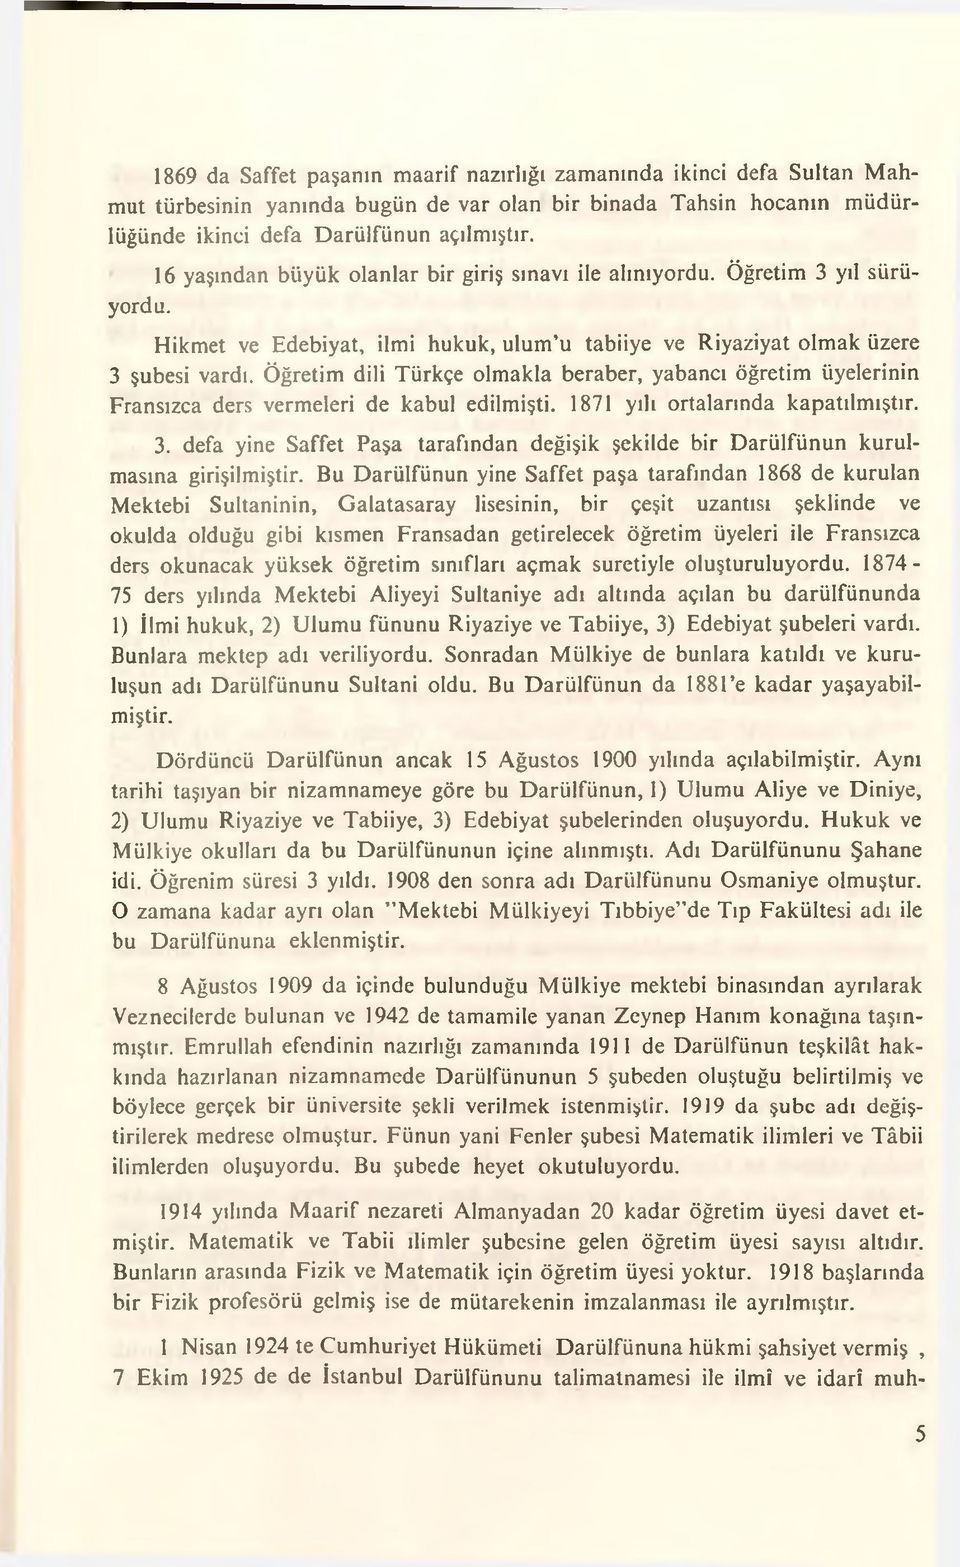 Öğretim dili Türkçe olmakla beraber, yabancı öğretim üyelerinin Fransızca ders vermeleri de kabul edilmişti. 1871 yılı ortalarında kapatılmıştır. 3.